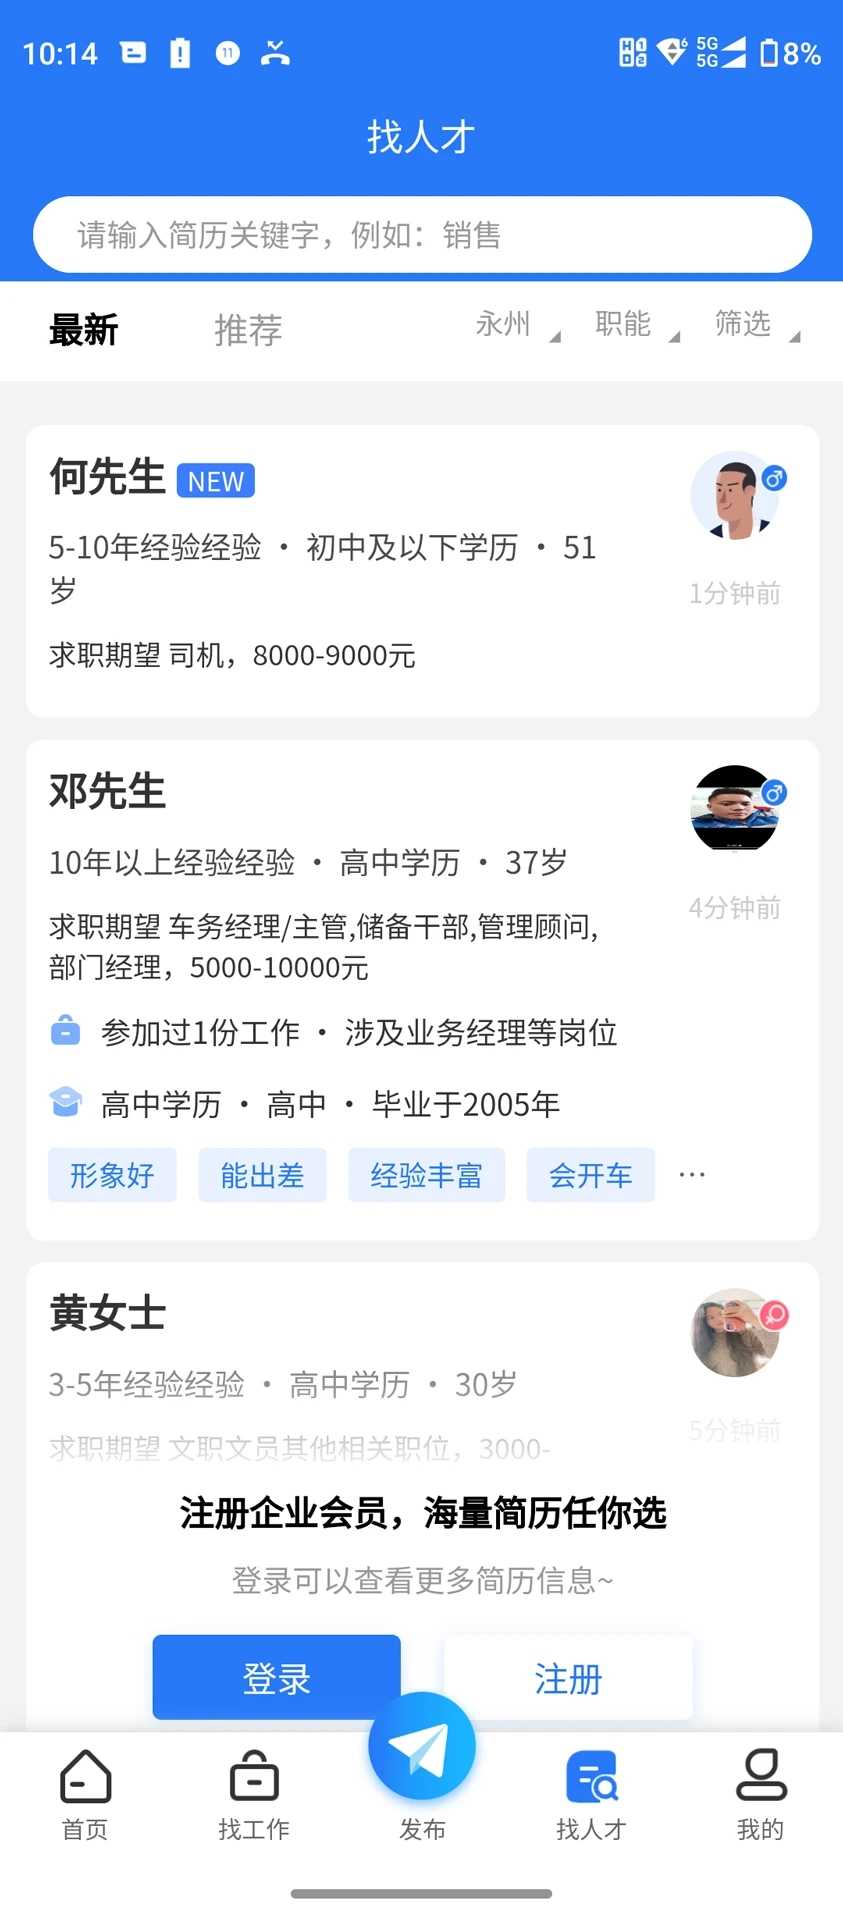 潇湘直聘网招聘网官方下载app最新版图片2